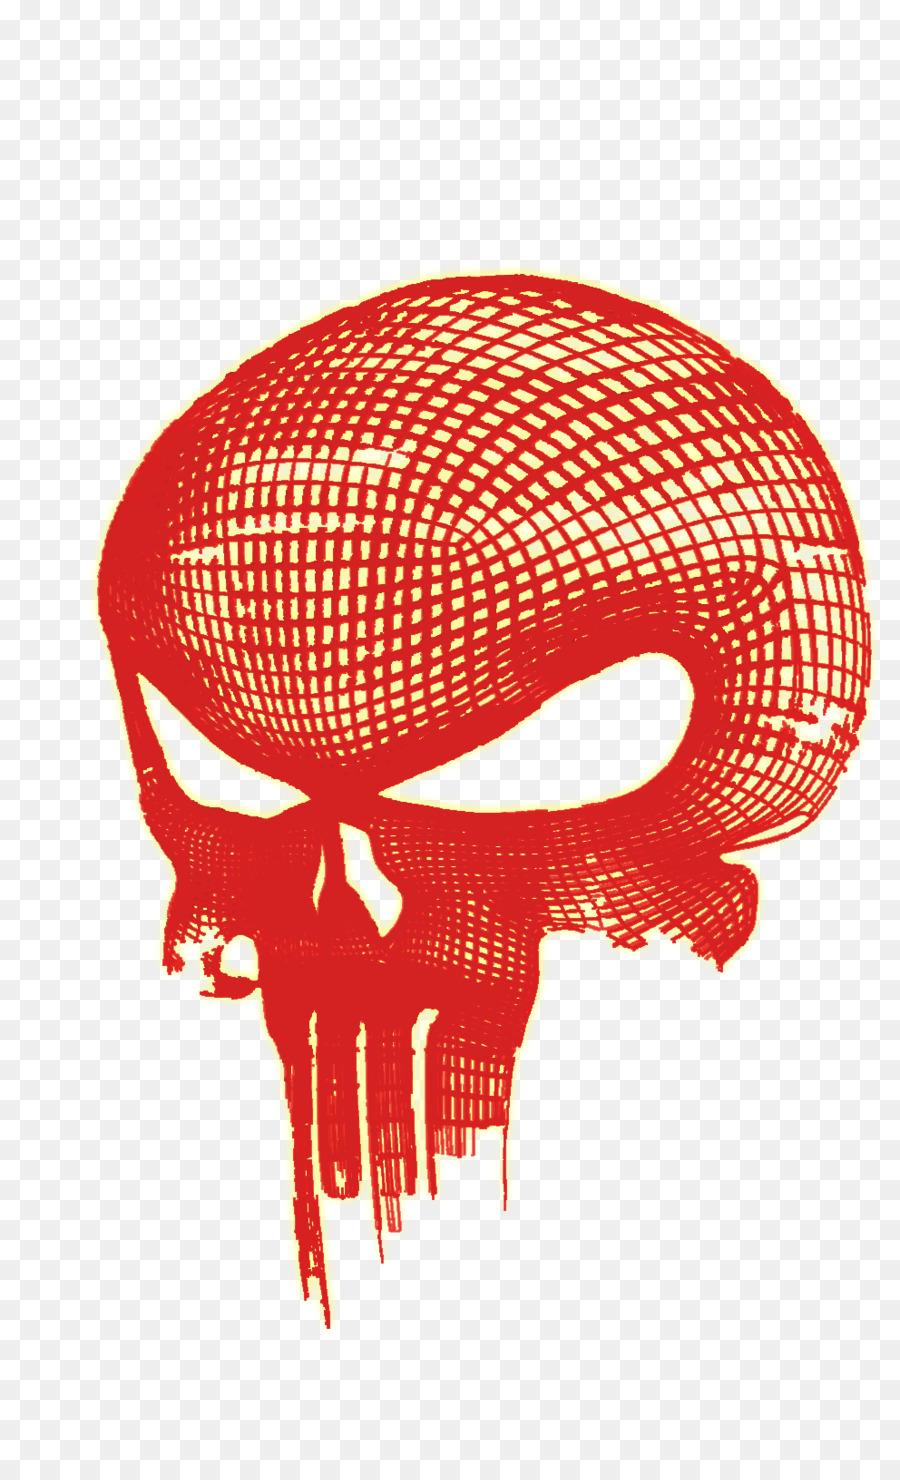 Punisher Red Skull Logo - skull png download - 992*1625 - Free Transparent Punisher png Download.